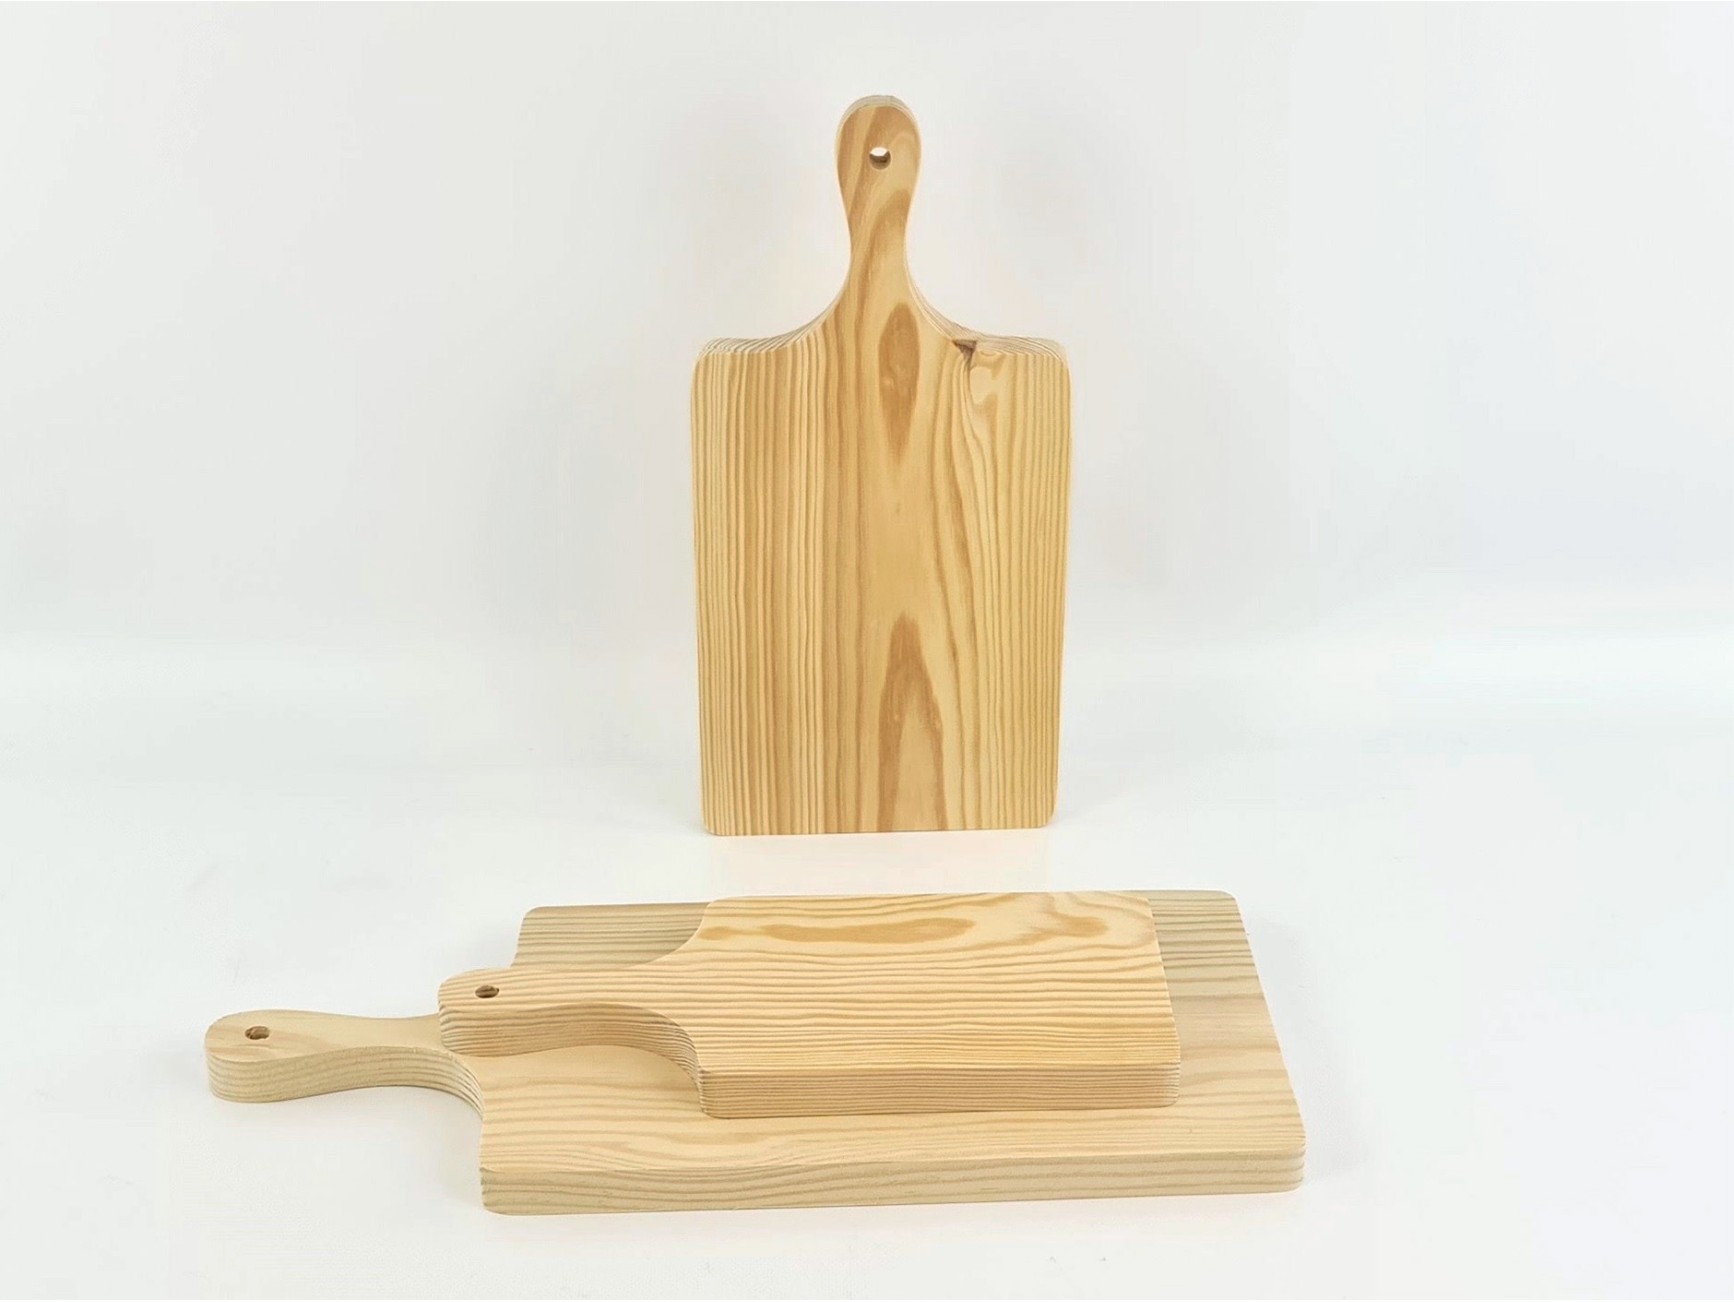 Tabla de cortar de madera de goma con mango de 15 x 9 pulgadas, tabla de  servir de madera con asa, tabla de cortar para cocina en casa, hornear